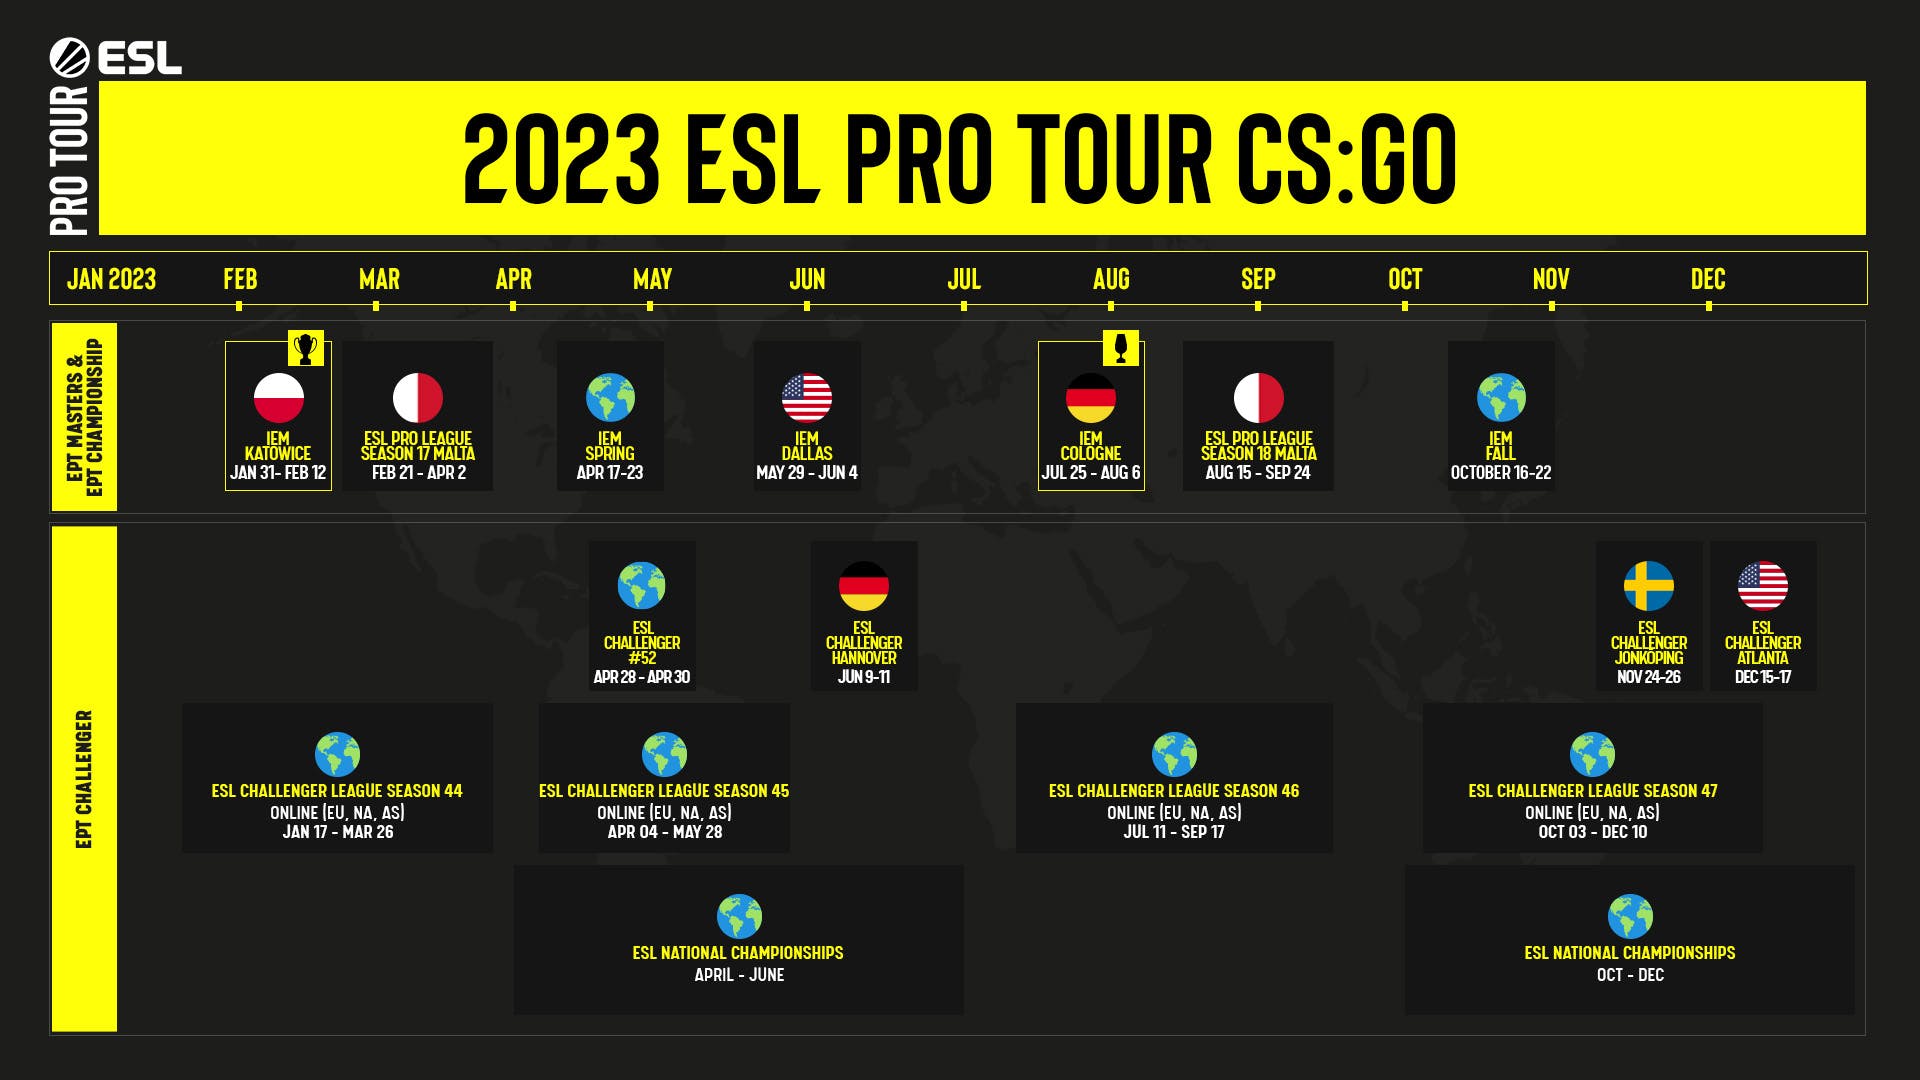 Przegląd ESL Pro Tour: historia i teraźniejszość serii turniejów 2